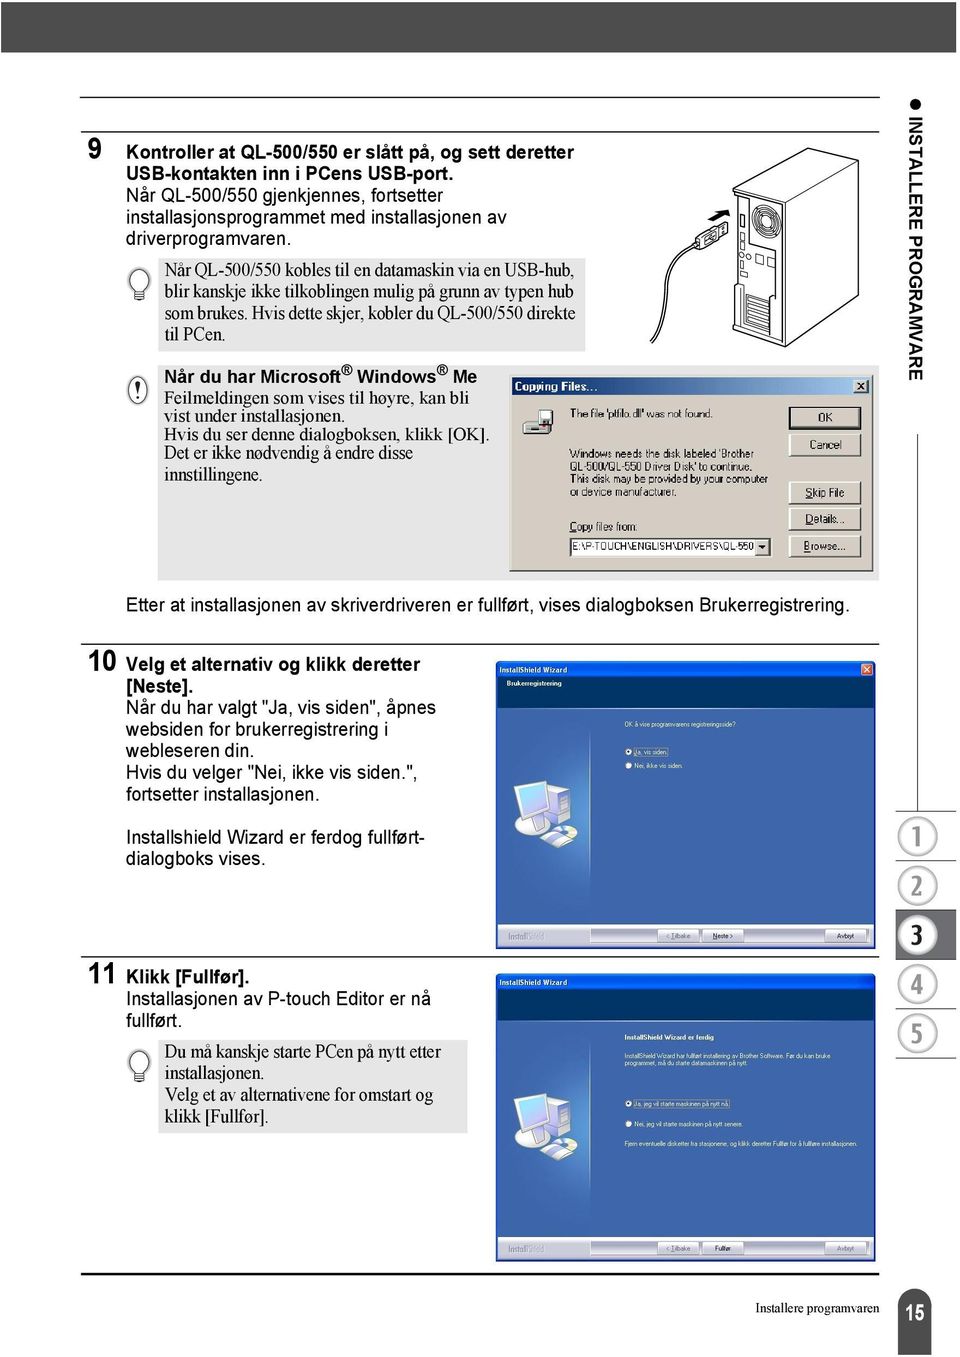 Når du har Microsoft Windows Me Feilmeldingen som vises til høyre, kan bli vist under installasjonen. Hvis du ser denne dialogboksen, klikk [OK]. Det er ikke nødvendig å endre disse innstillingene.